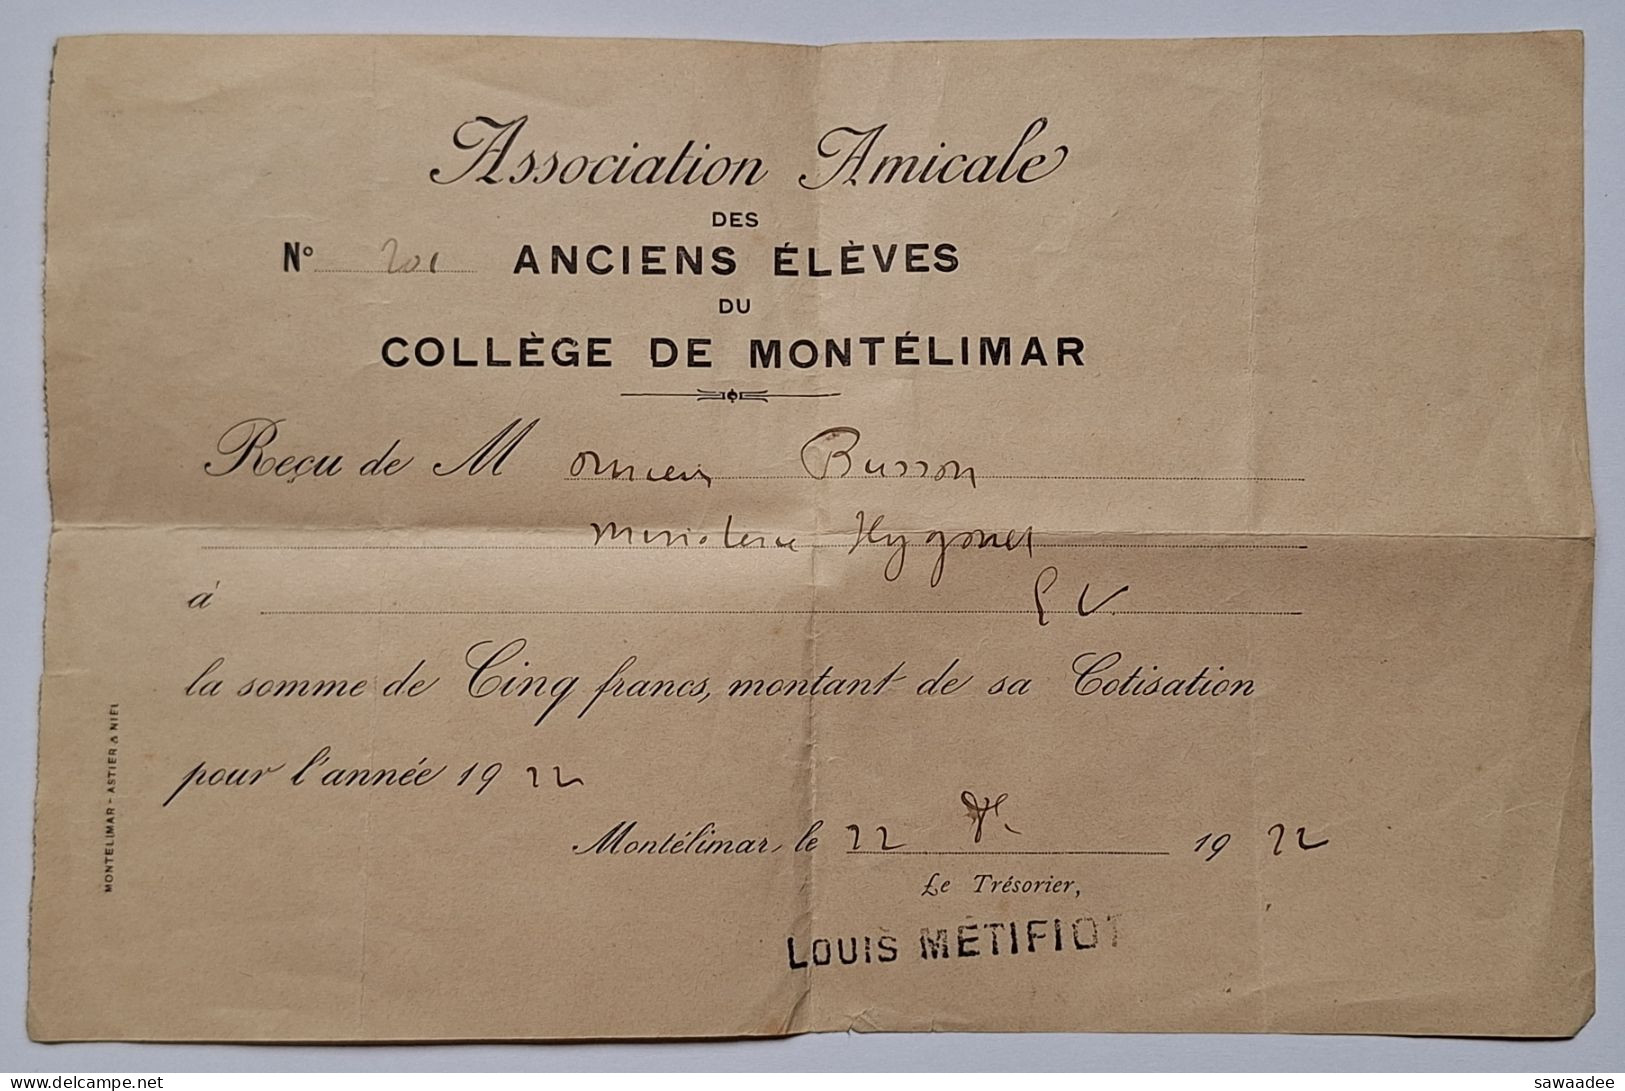 DOCUMENT - ASSOCIATION AMICALE DES ANCIENS ELEVES DU COLLEGE DE MONTELIMAR - COTISATION 1924 - Diplomi E Pagelle